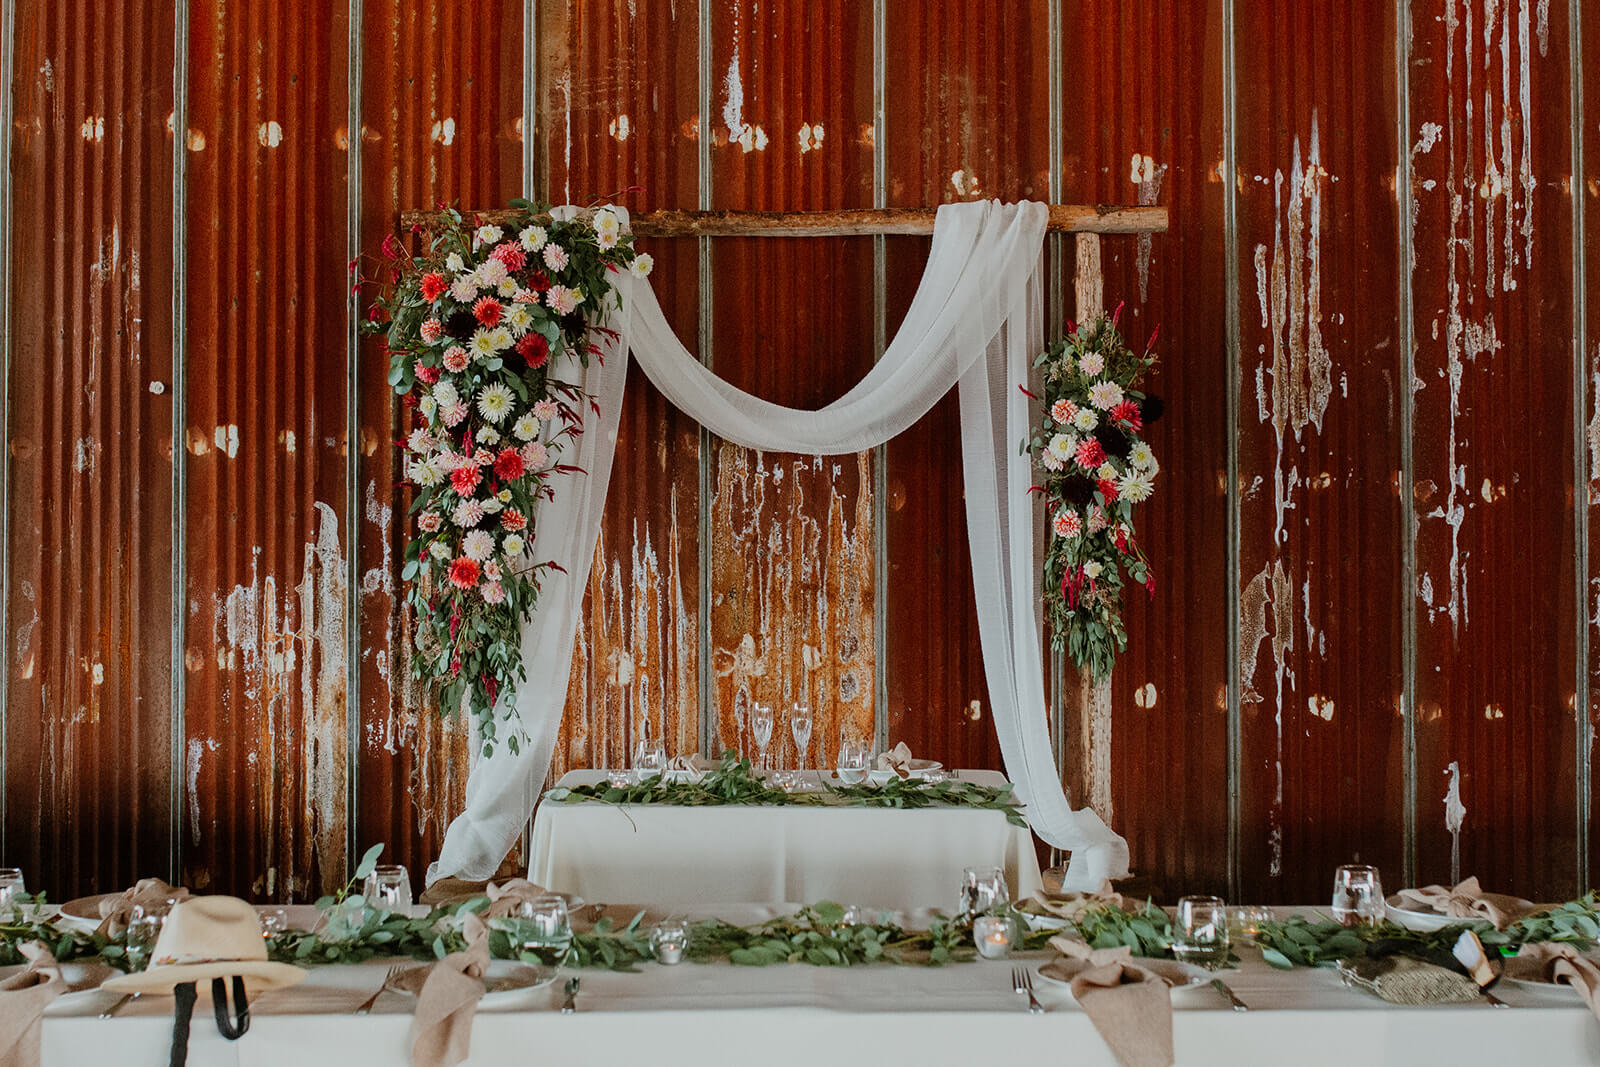 DIY Wedding floral arch for wedding reception